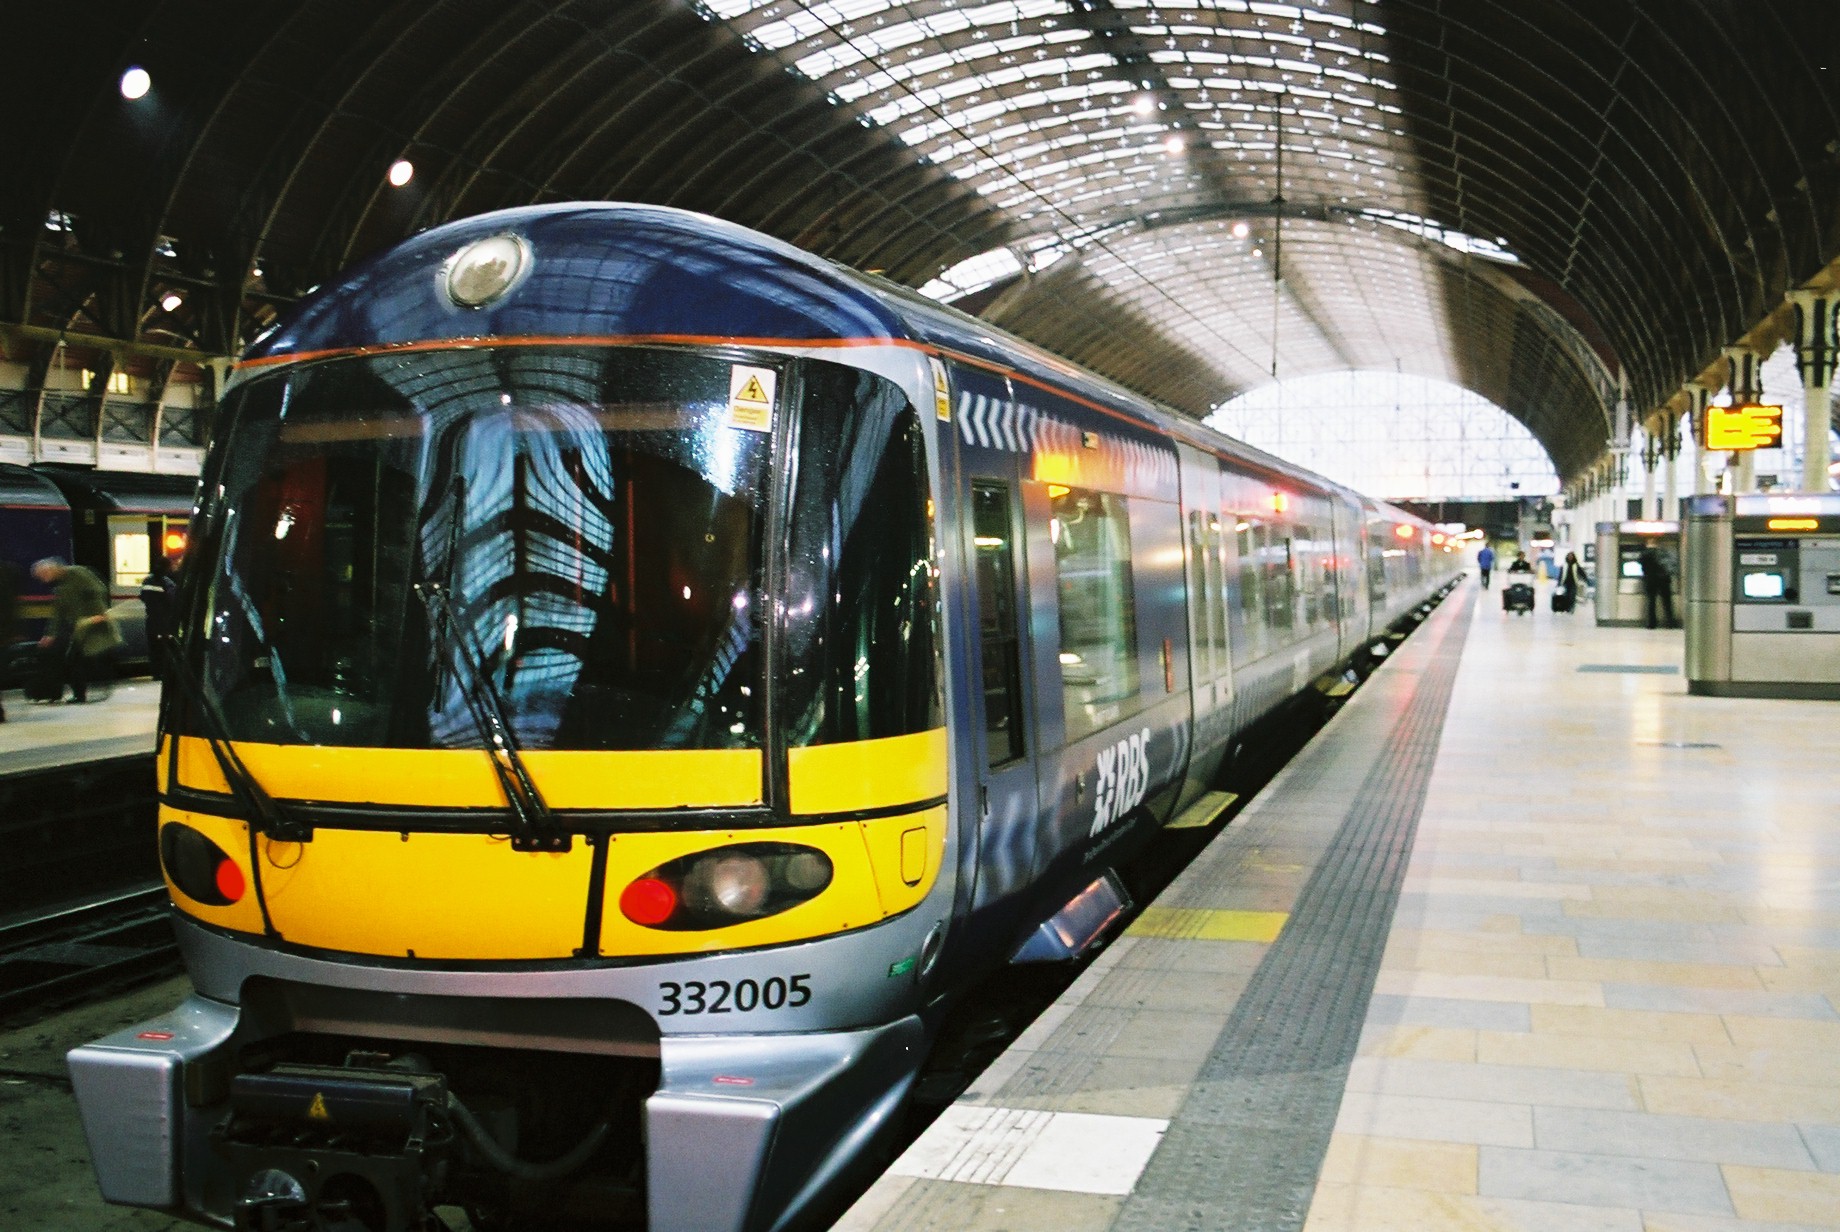 Flyg+Tåg+Metro är en verklighet då du bokar en resa till London och väljer att landa på Gatwick